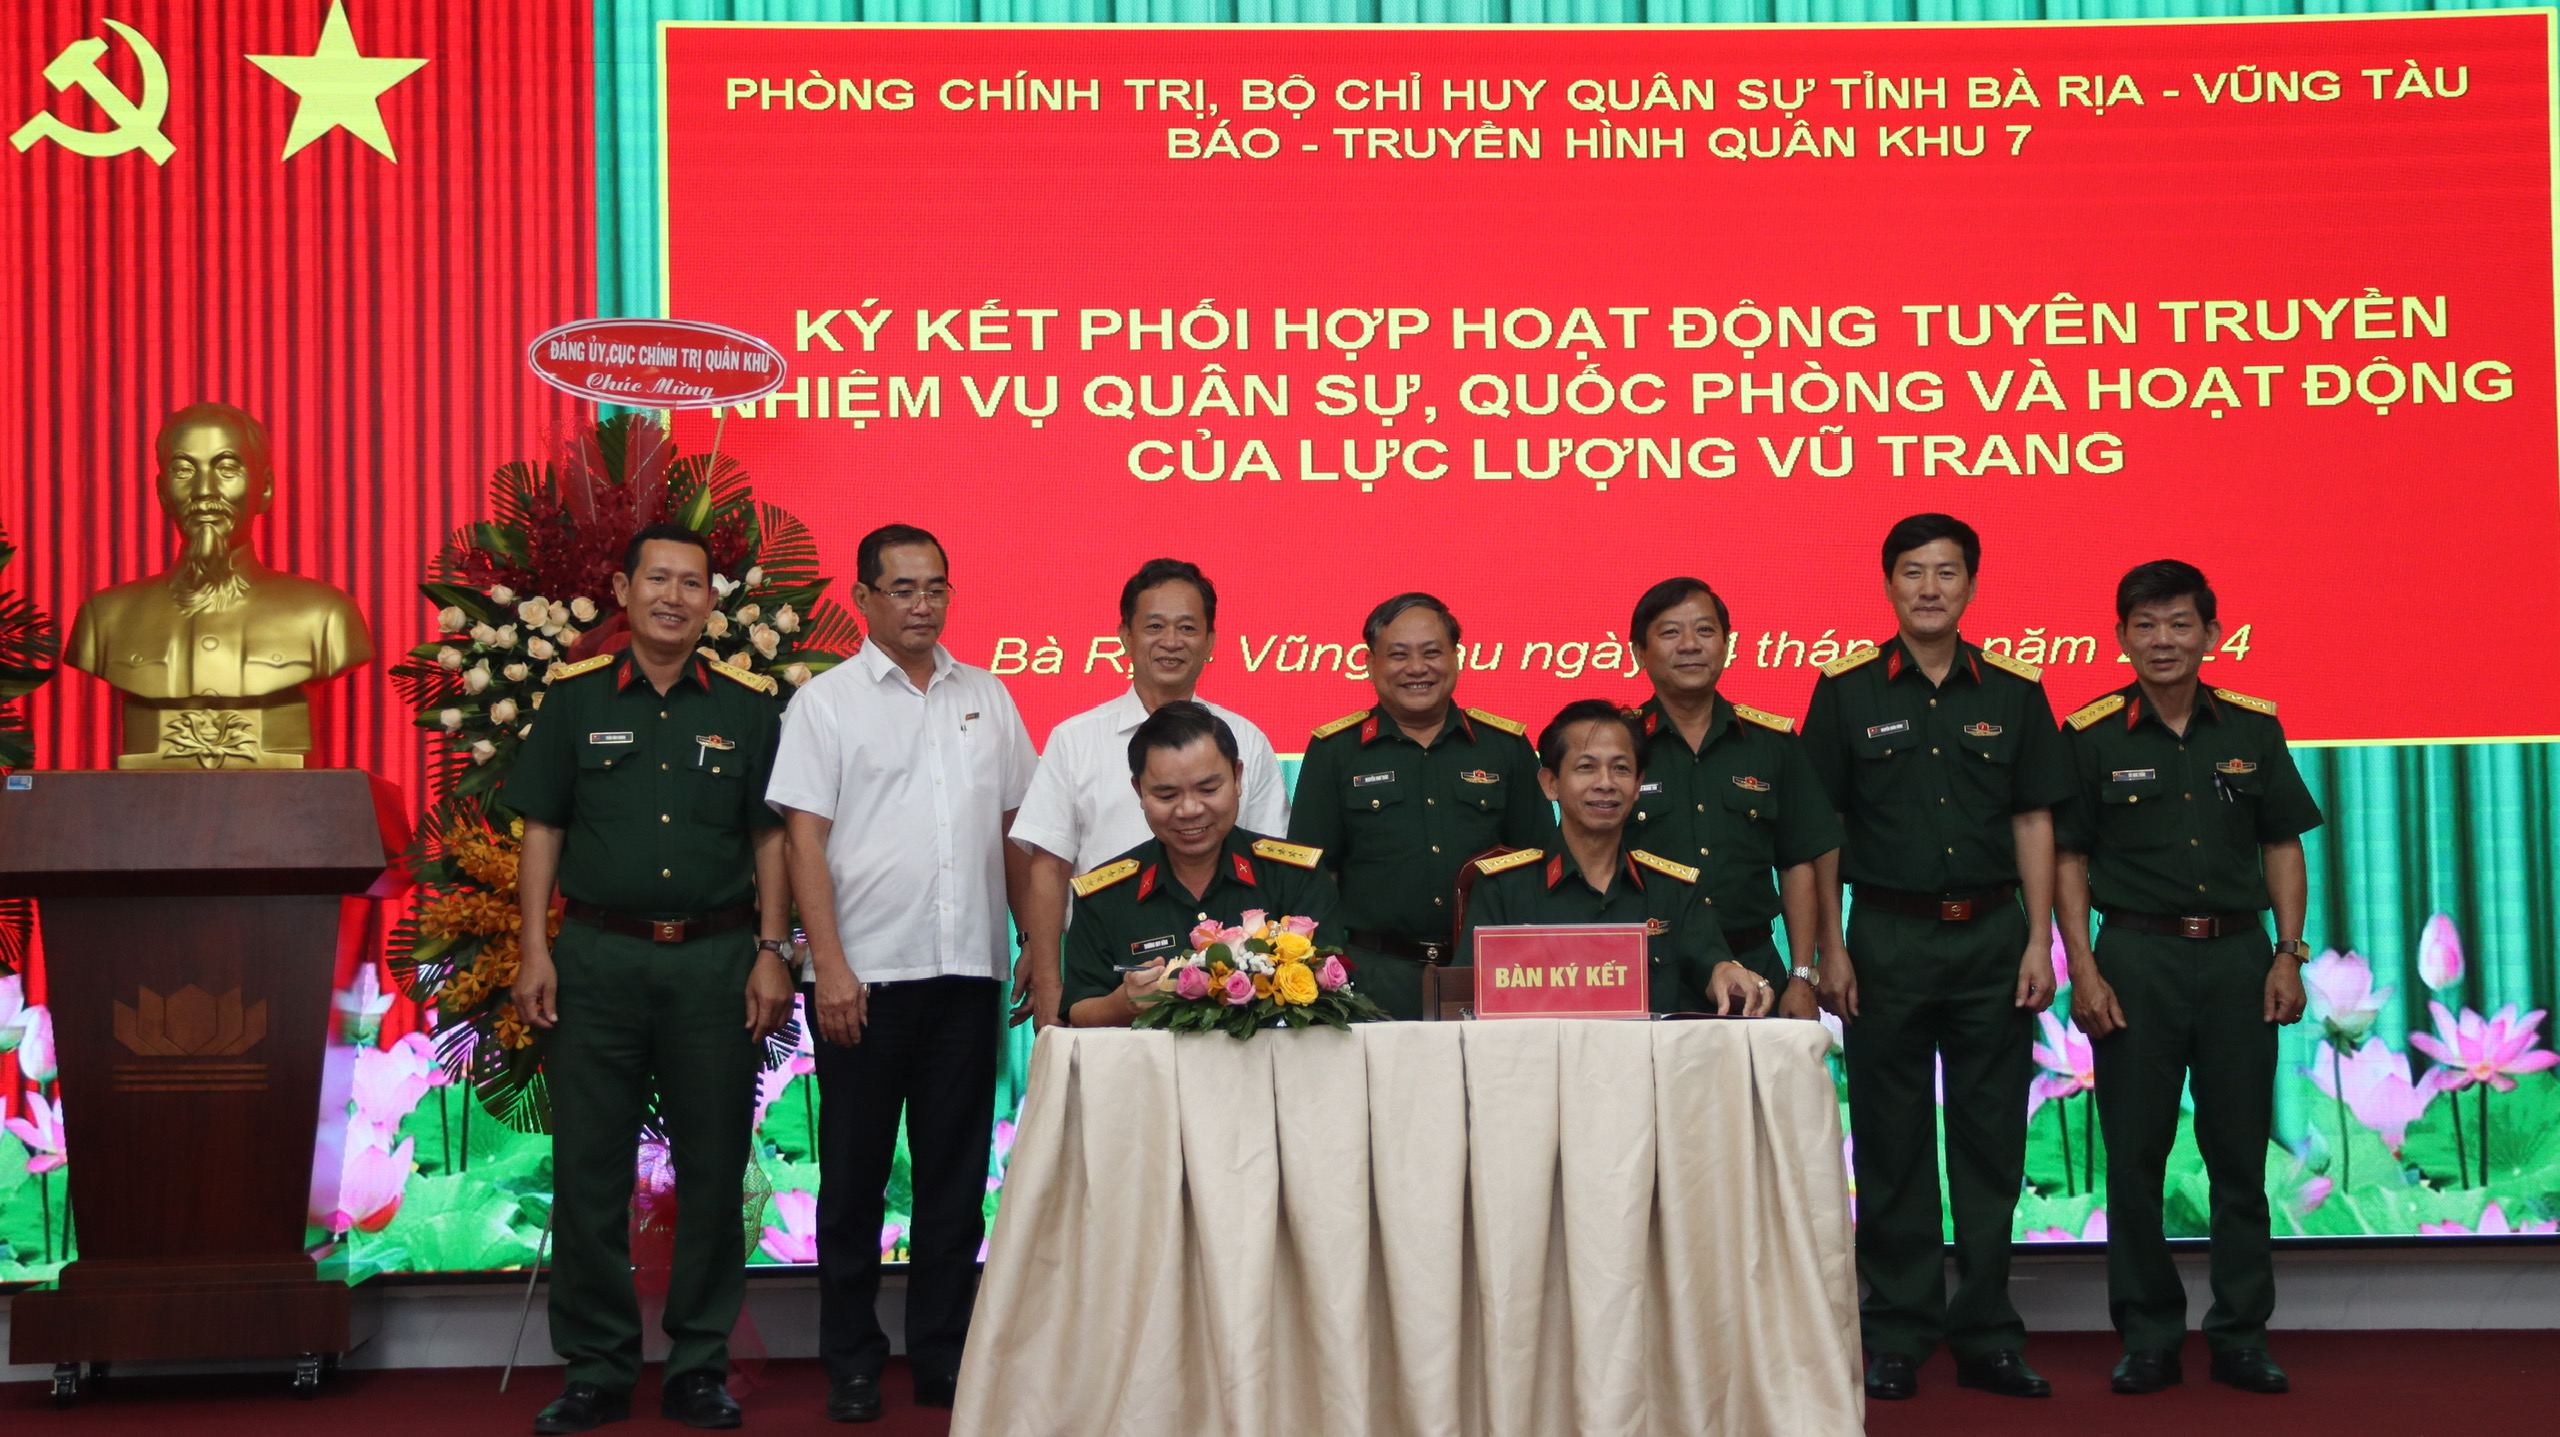 Bộ CHQS tỉnh và Báo-truyền hình Quân khu 7 ký kết phối hợp hoạt động tuyên truyền.